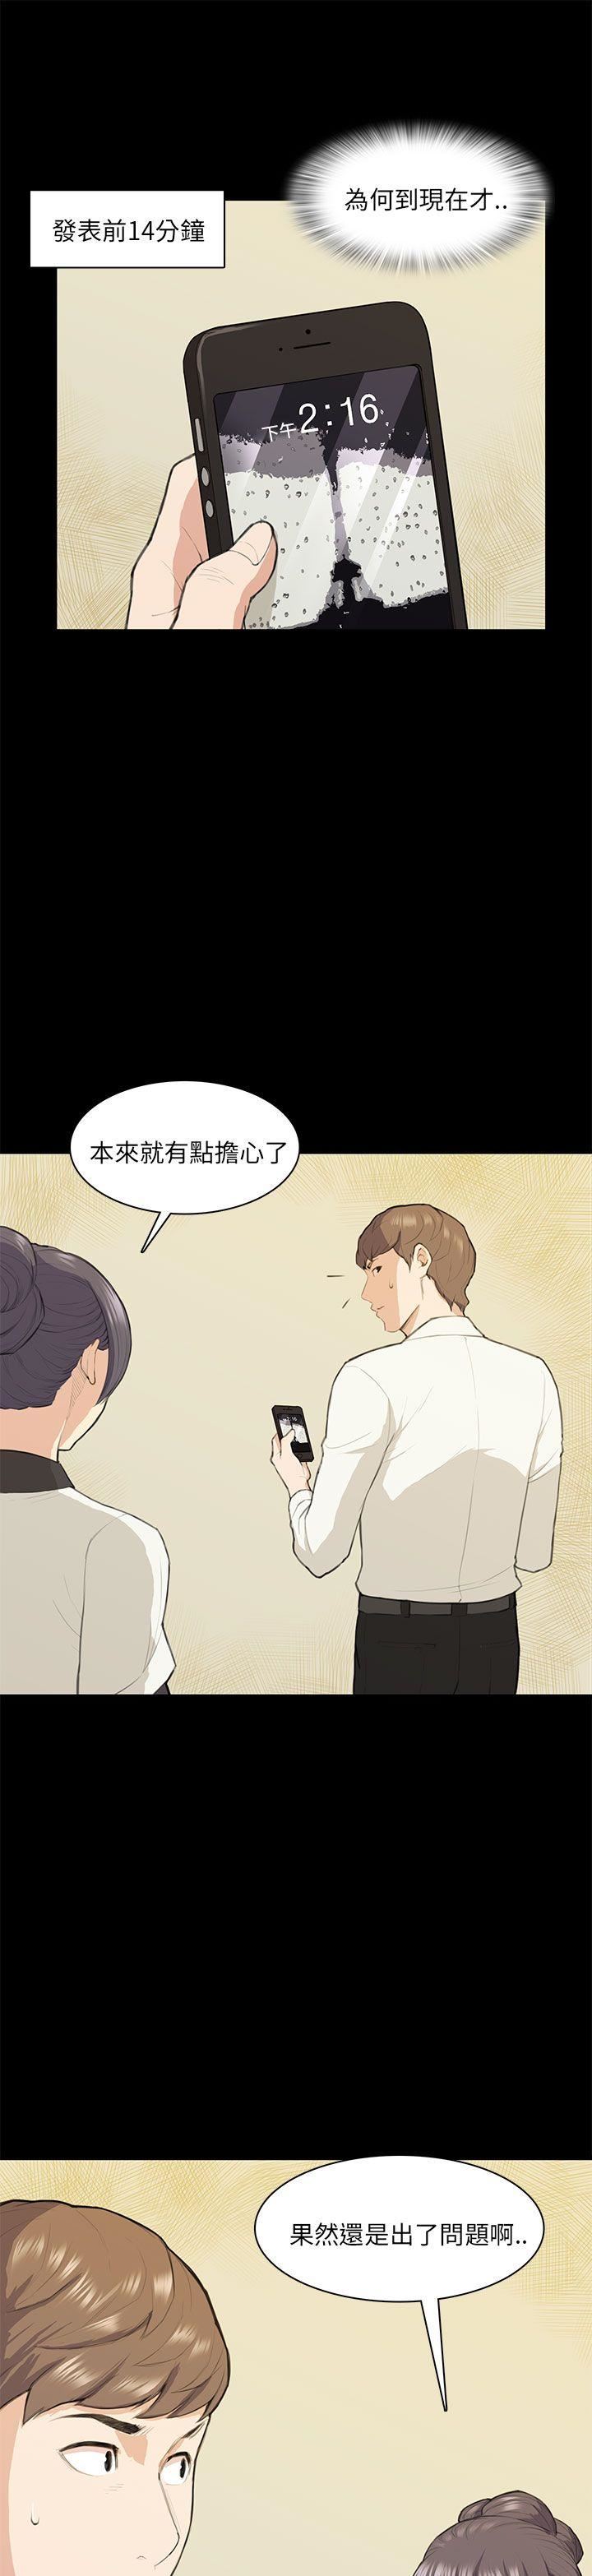 韩国污漫画 斯德哥爾摩癥候群 第15话 6